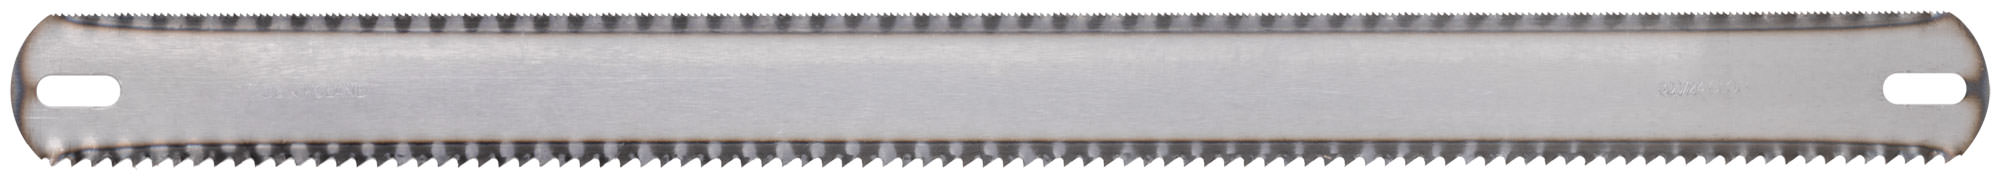 Полотна ножовочные по металлу, каленый зуб, узкие односторонние 300х12 мм (Изображение 1)